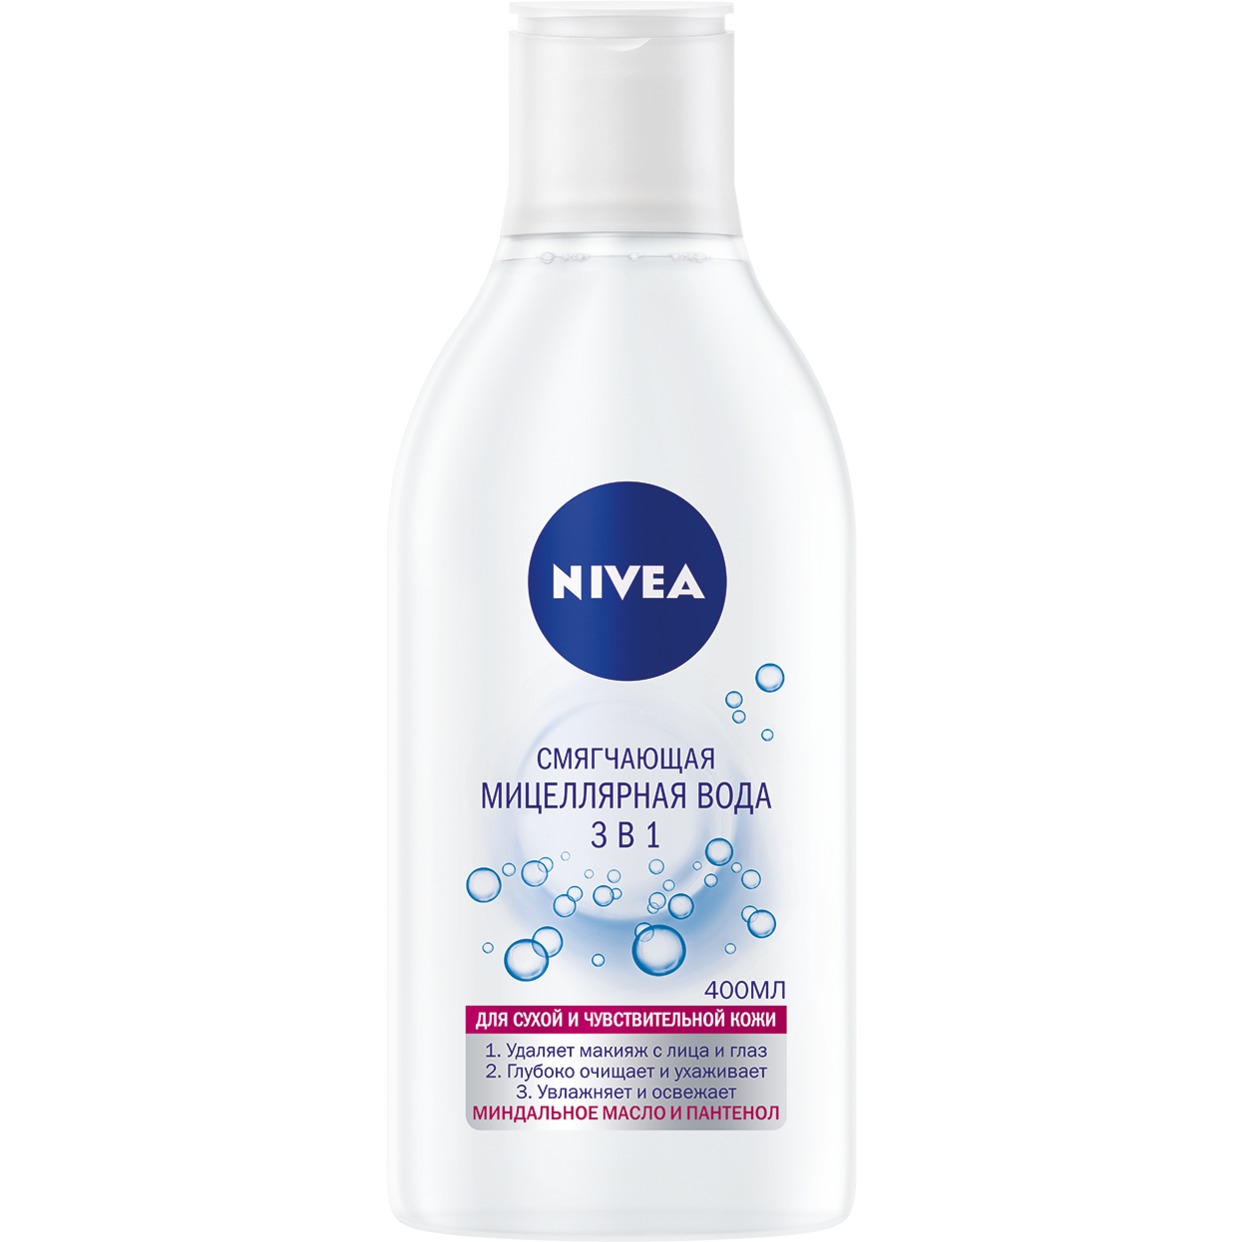 Мицеллярная вода Nivea Смягчающая 3в1 для сухой и чувствительной кожи 400 мл по акции в Пятерочке